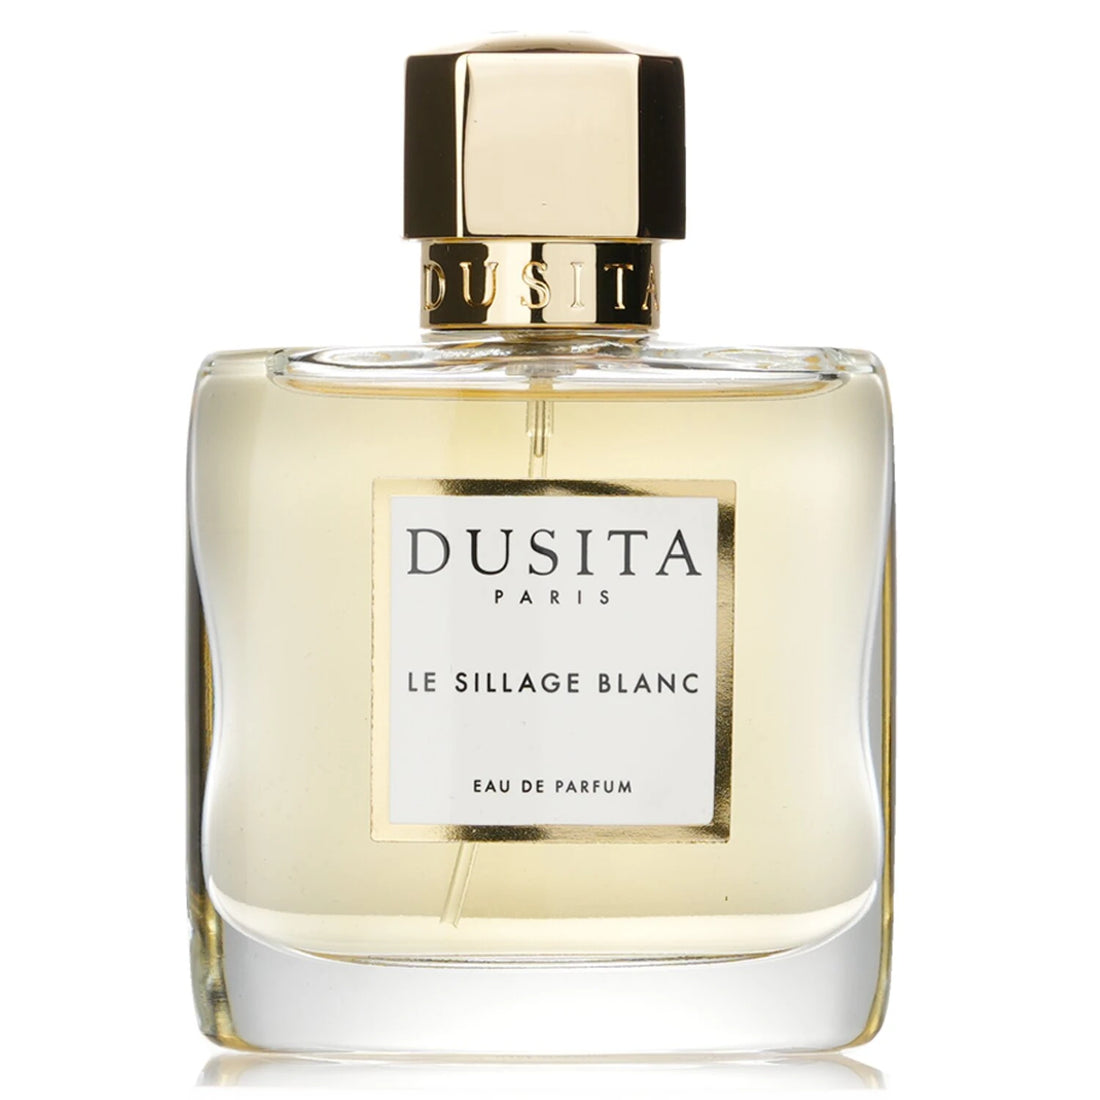 Dusita Le Sillage Blanc Eau de Parfum 100 ml